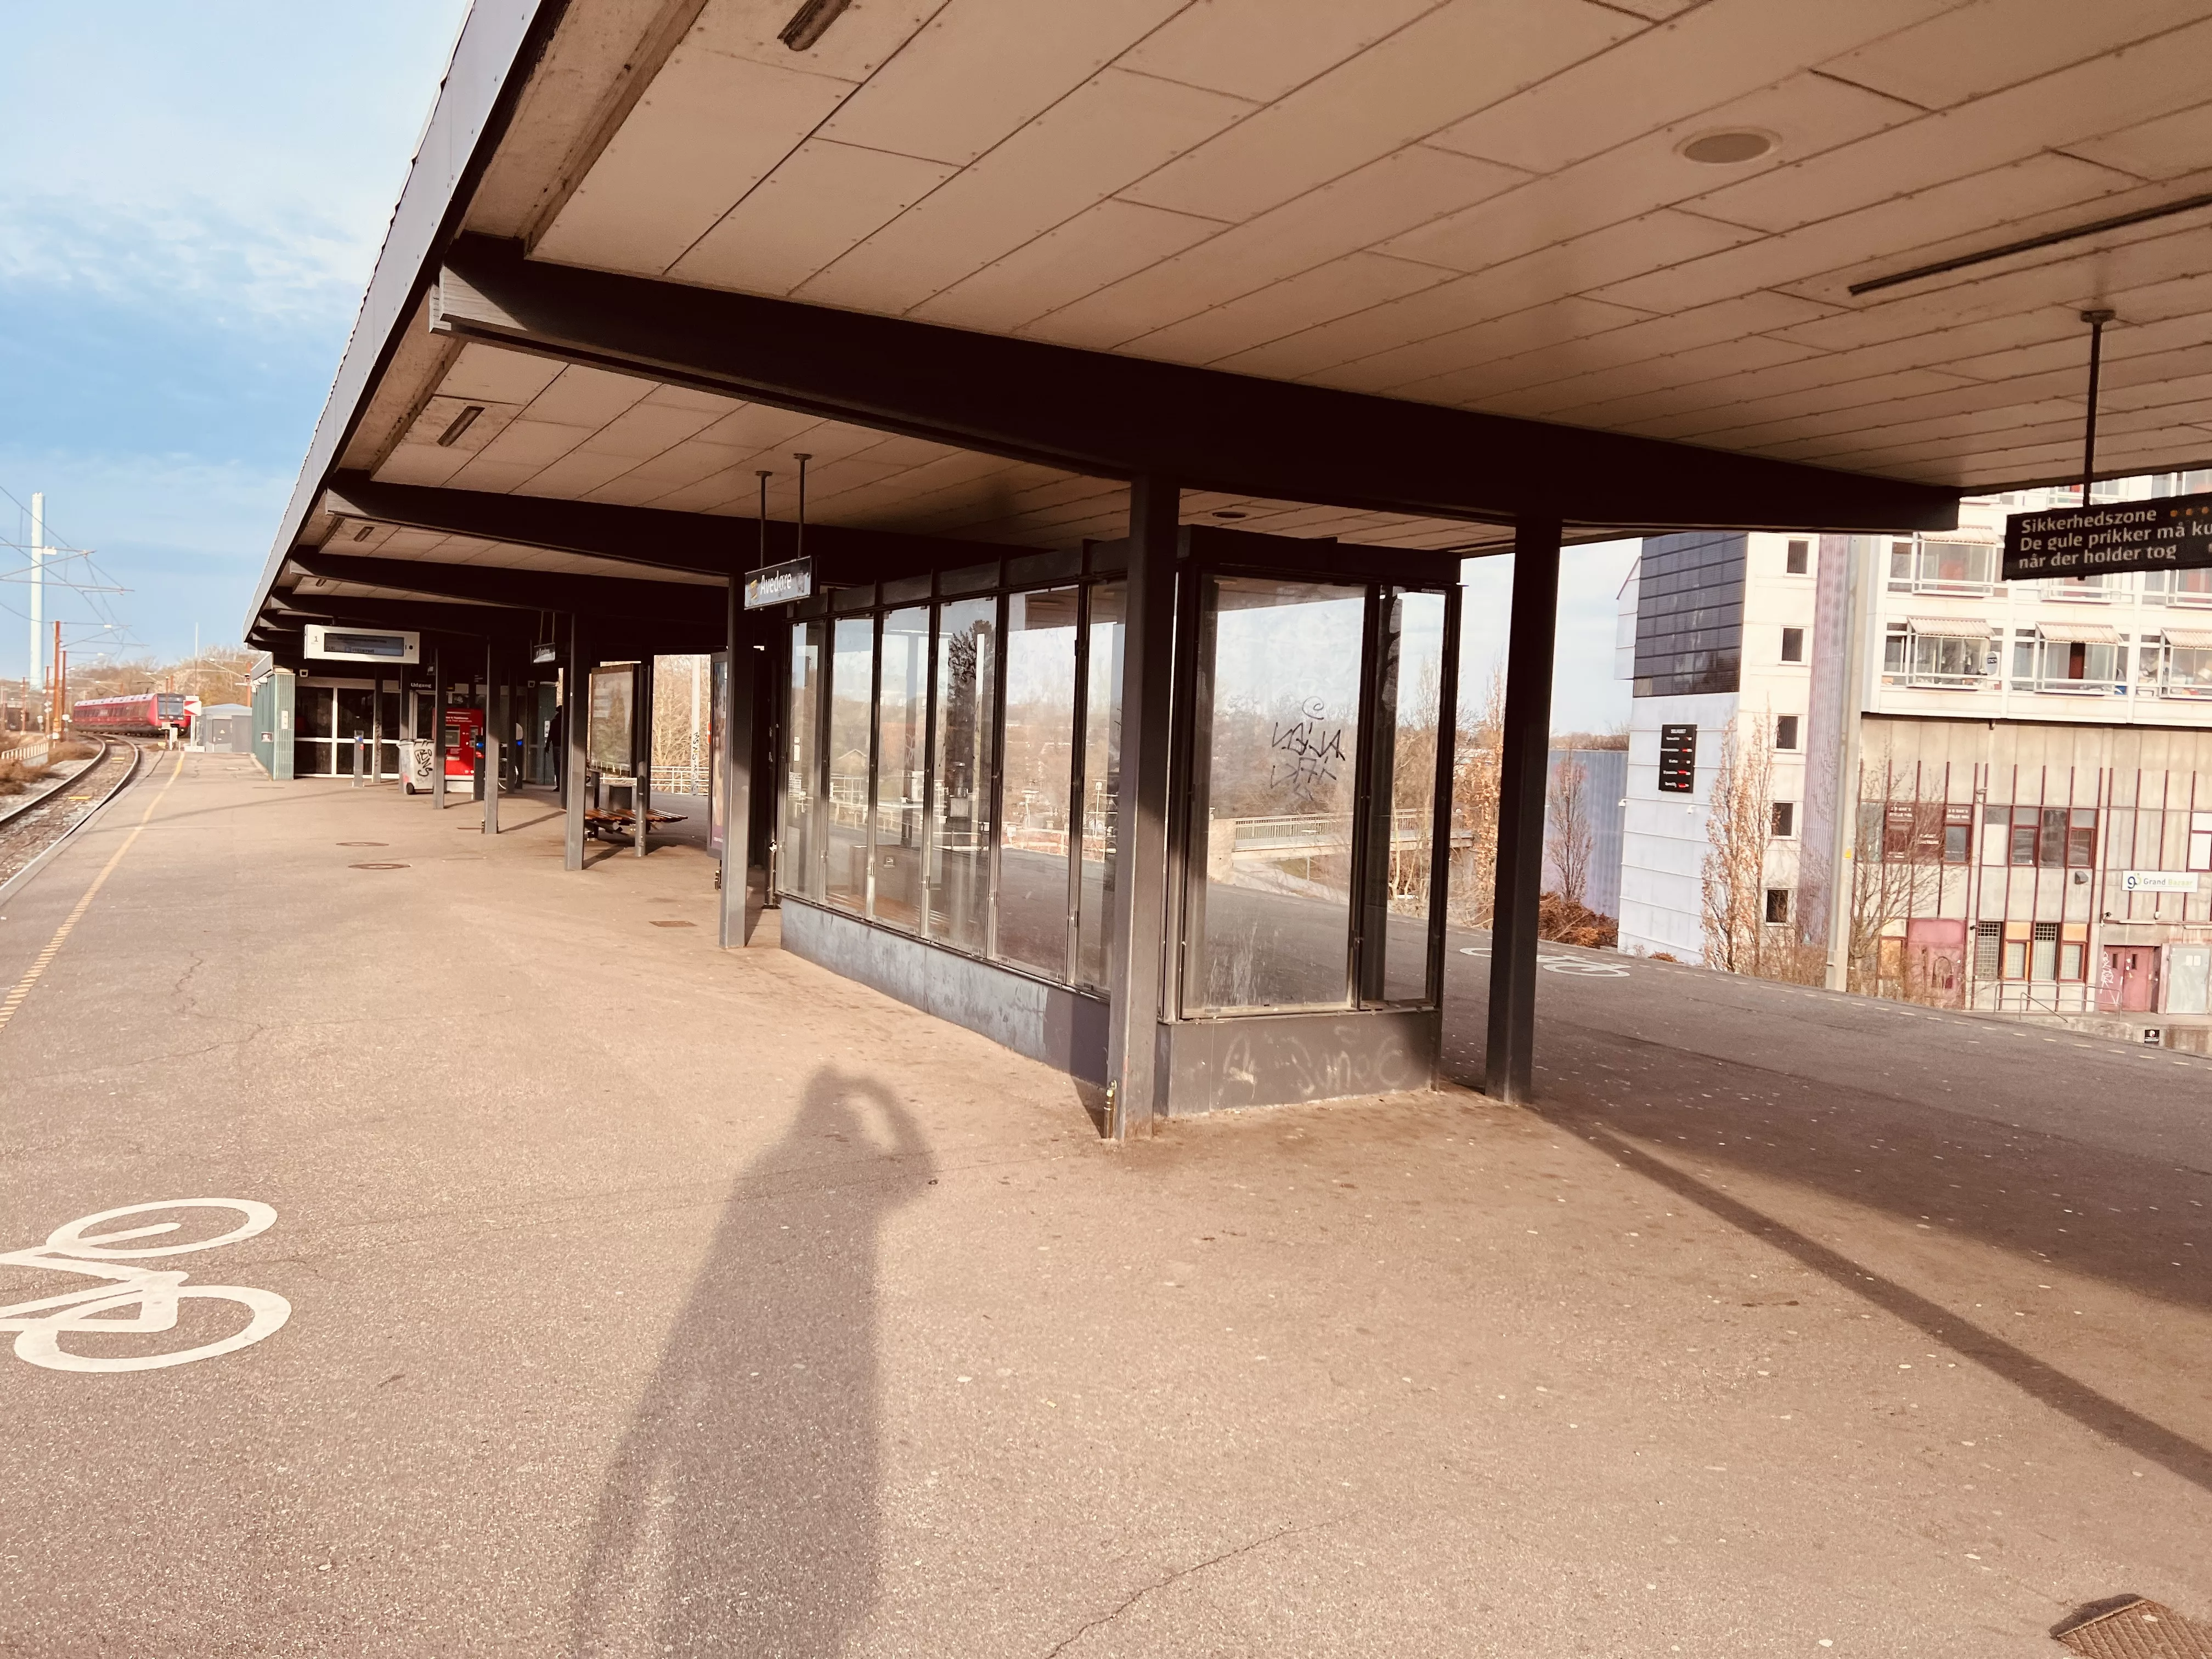 Billede af Avedøre S-togstrinbræt.